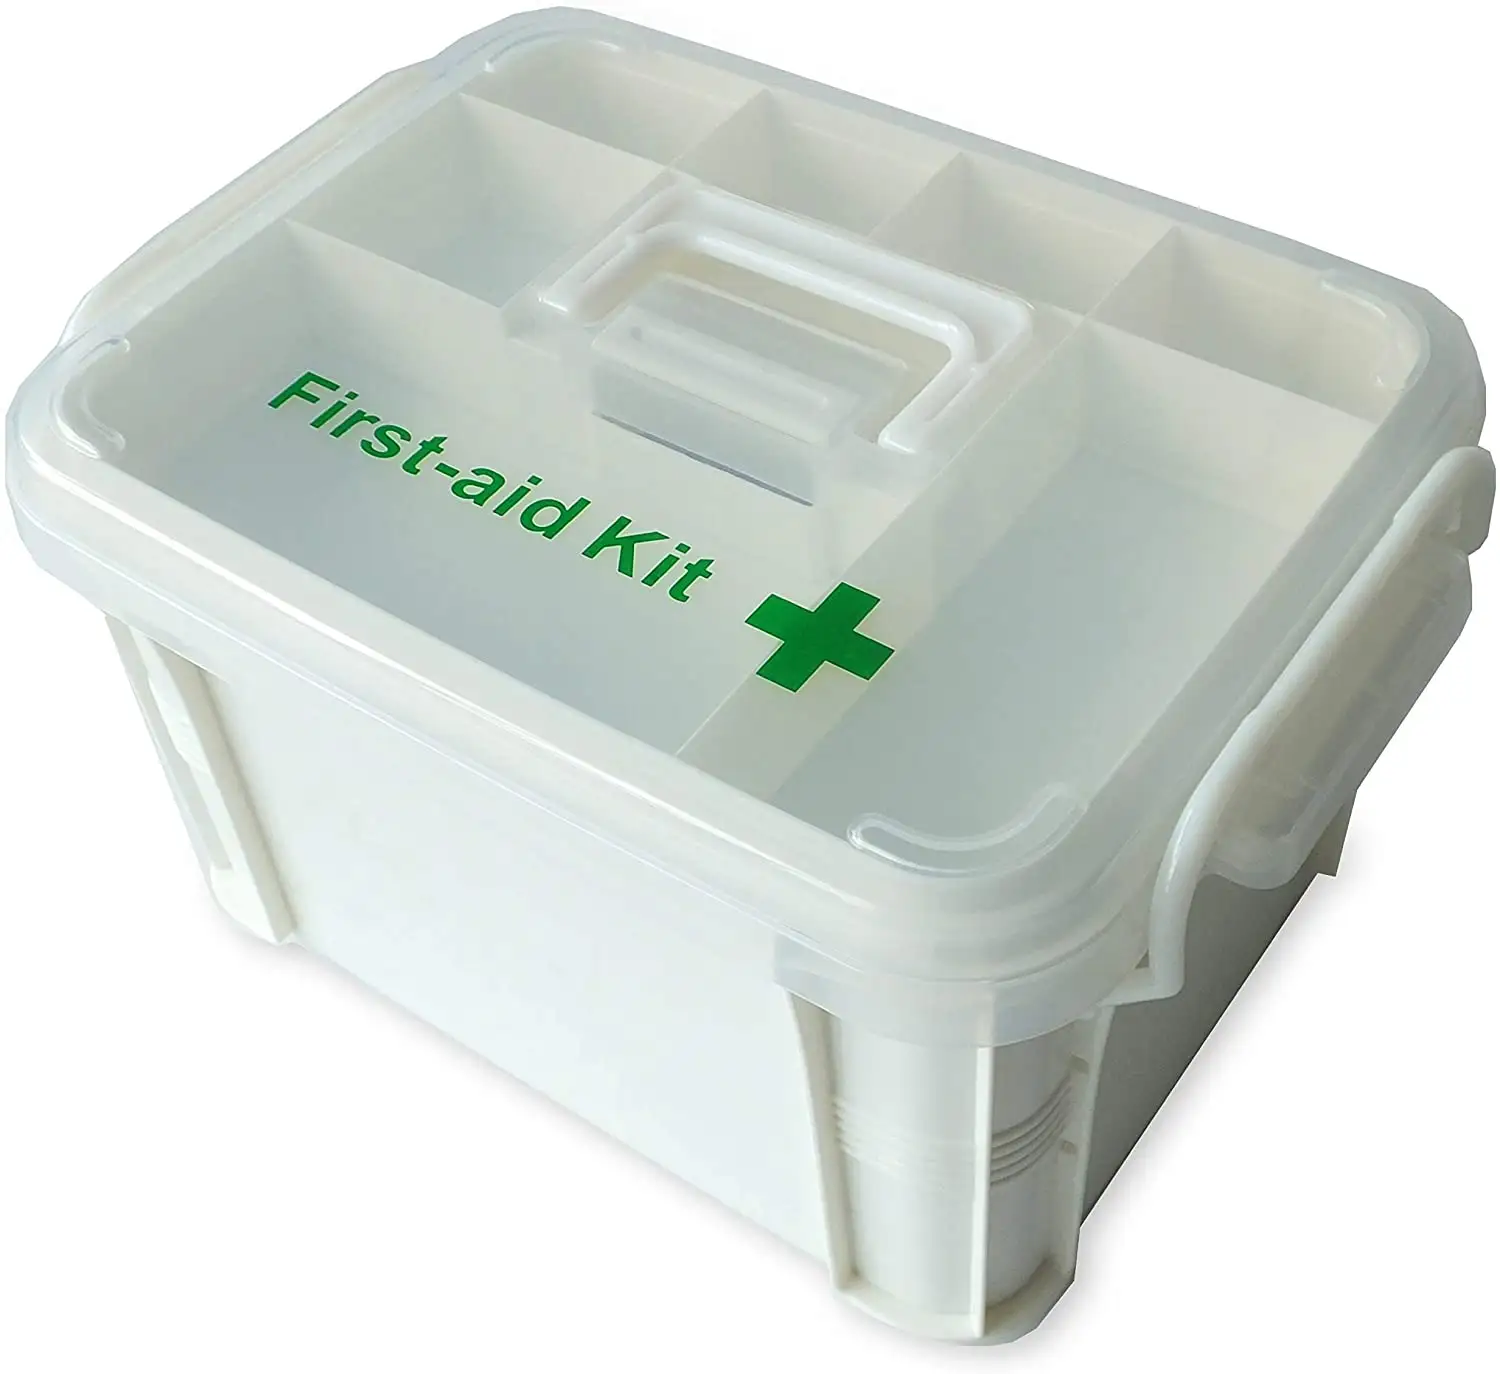 Ori-Power Portable behandelte Medizin Erste-Hilfe-Box Kunststoff Medizin Grund organisator Halter. Familie kleine Sicherheit Notfall medizin